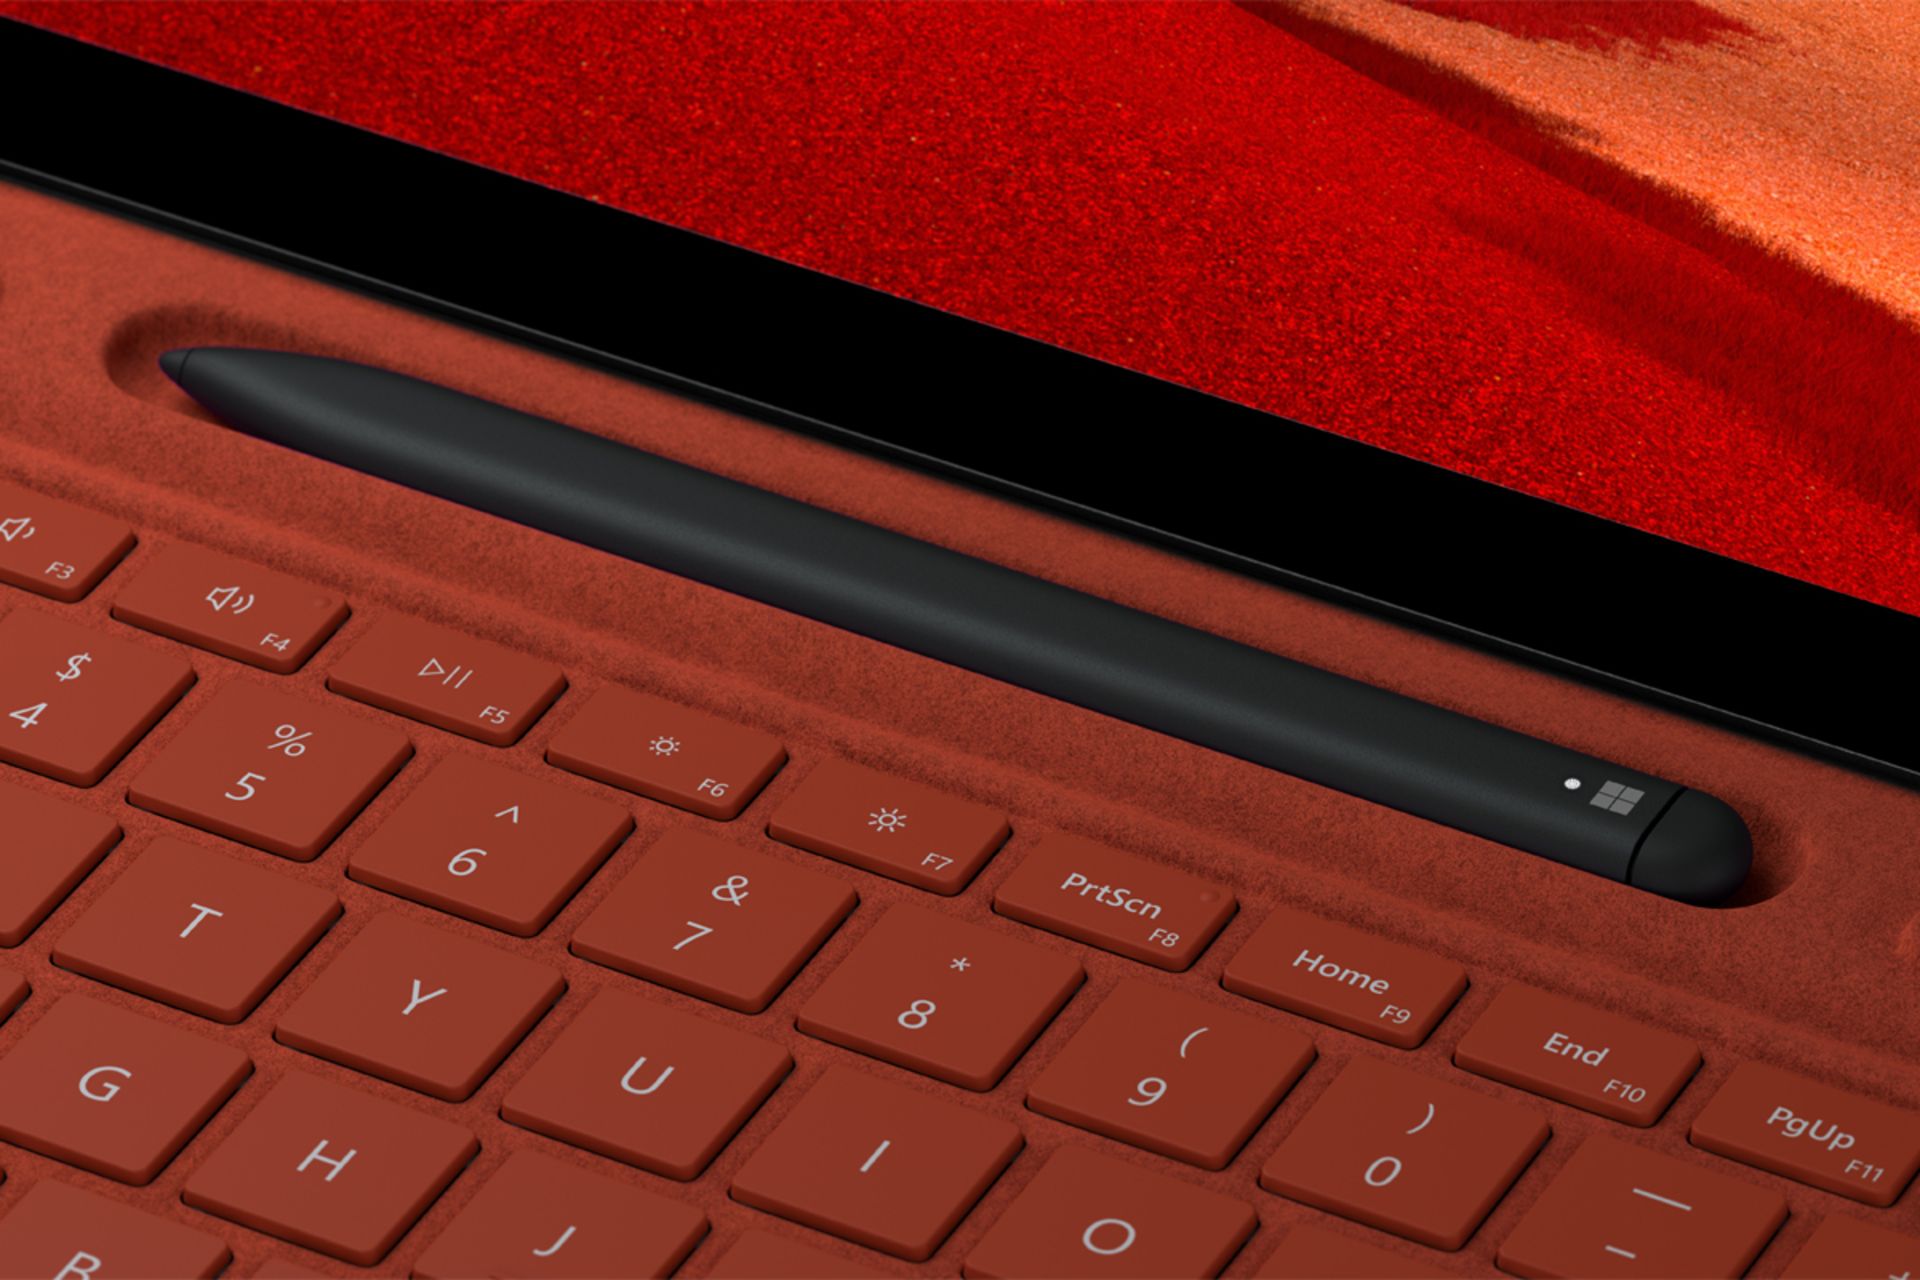 مرجع متخصصين ايران سرفيس پرو ايكس 2020 / Surface Pro X قرمز با سرفيس اسليم پن / Slim Pen